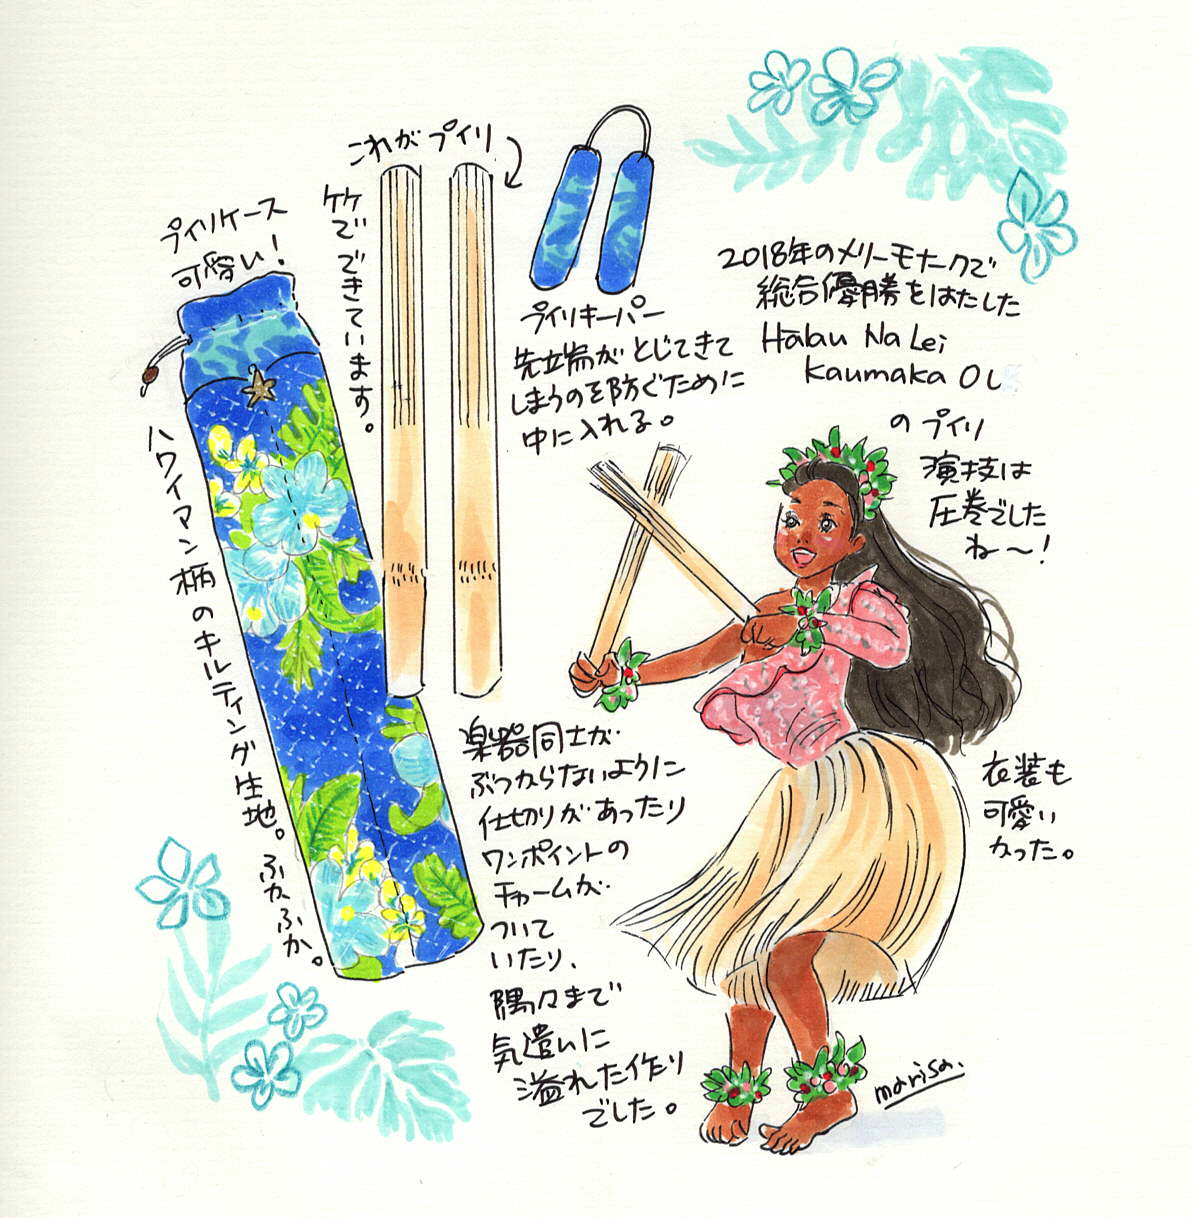 ニッチな商品を探すにはminneがいいかも プイリケースを買いました Marisa Hanasaki Illustration